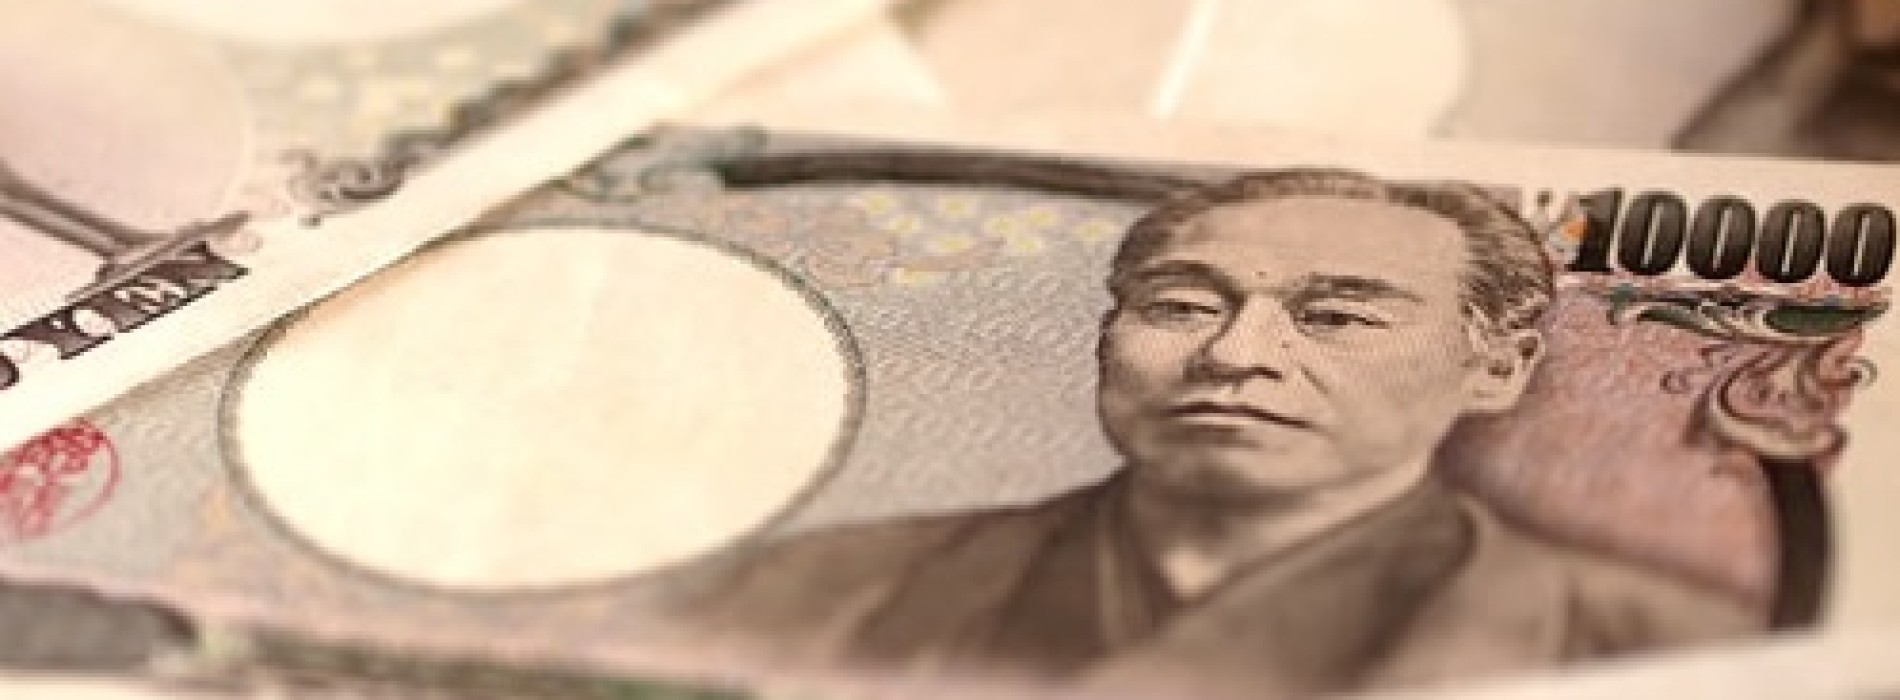 Poranny komentarz walutowy – jen nadal słabnie